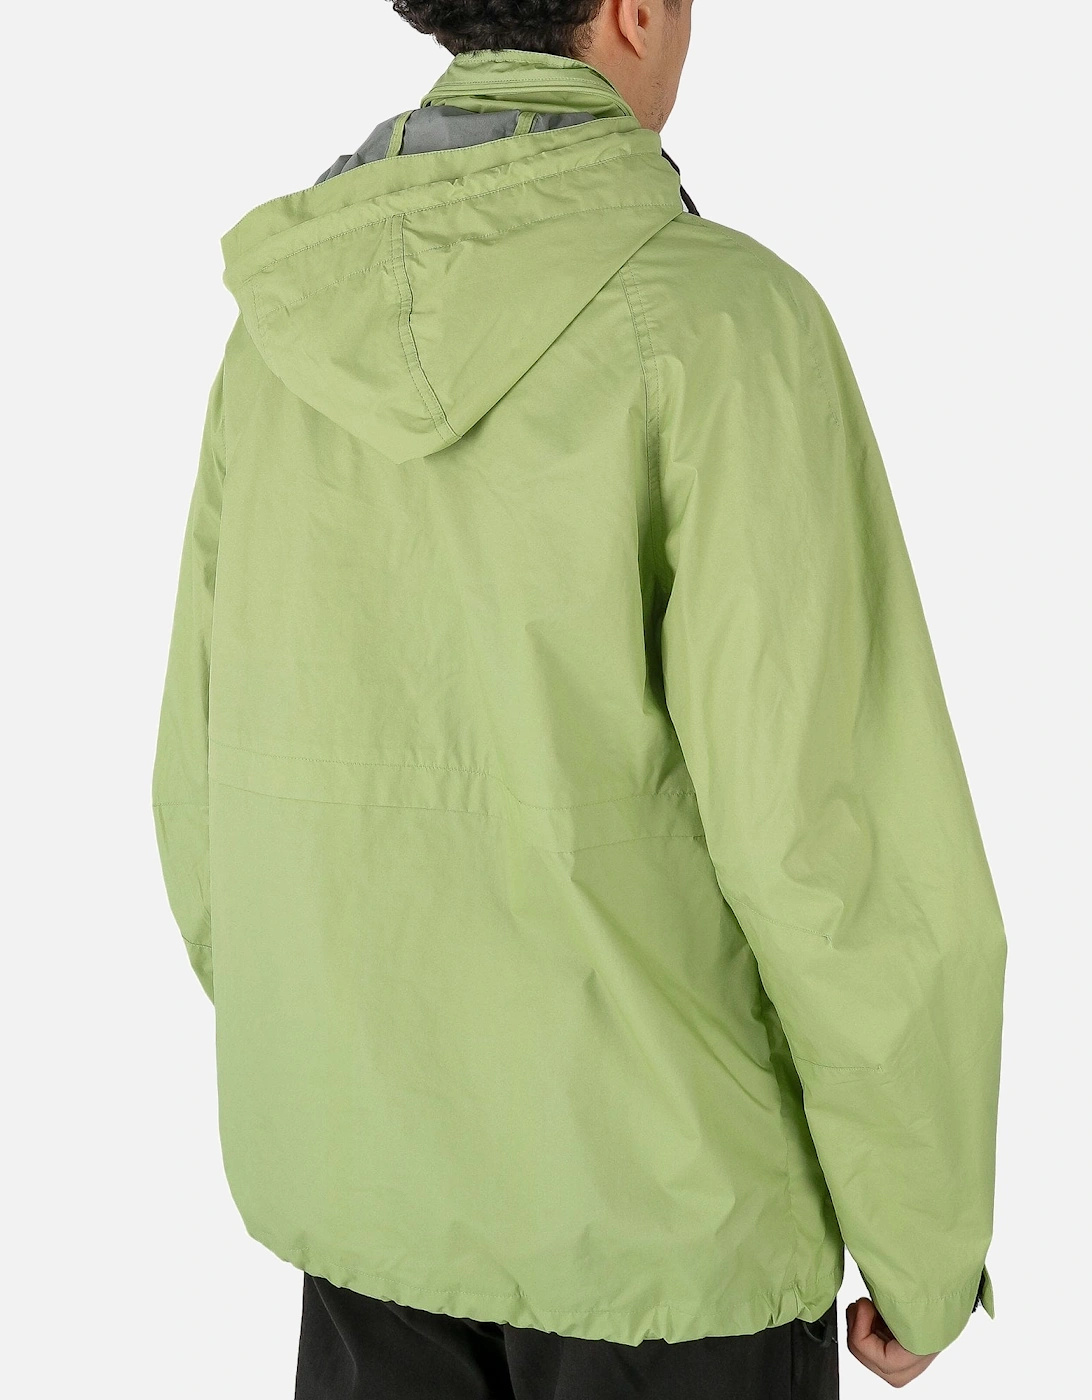 Magma Zip Hooded Lime Jacket